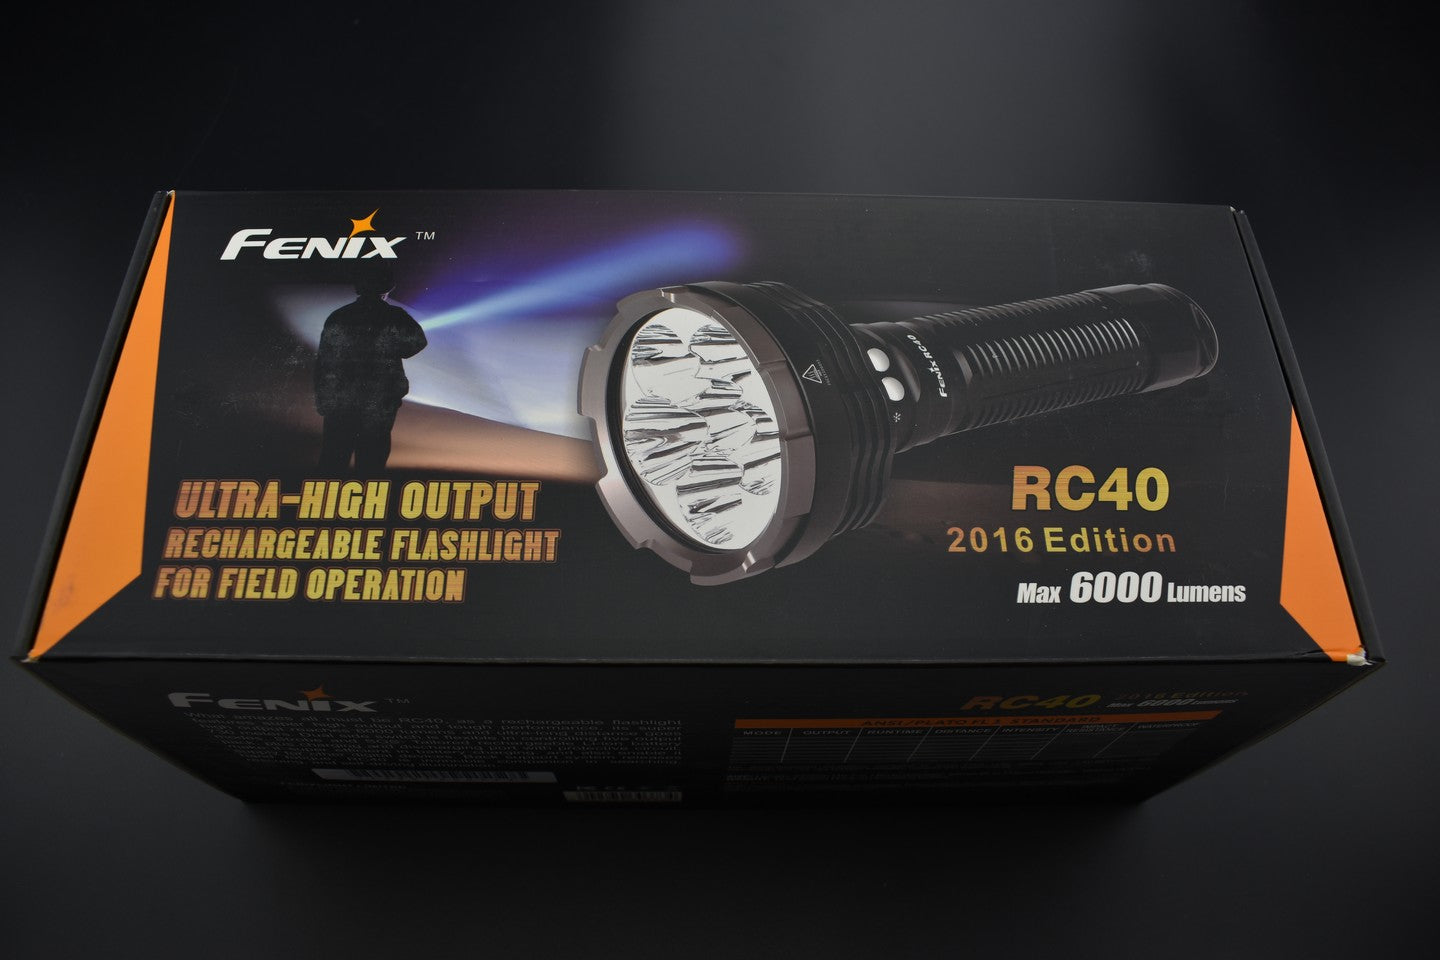 Fenix occasion - OCF077 RC40 - Revendeur Officiel Lampes FENIX depuis 2008 | Votre Boutique en ligne FENIX®